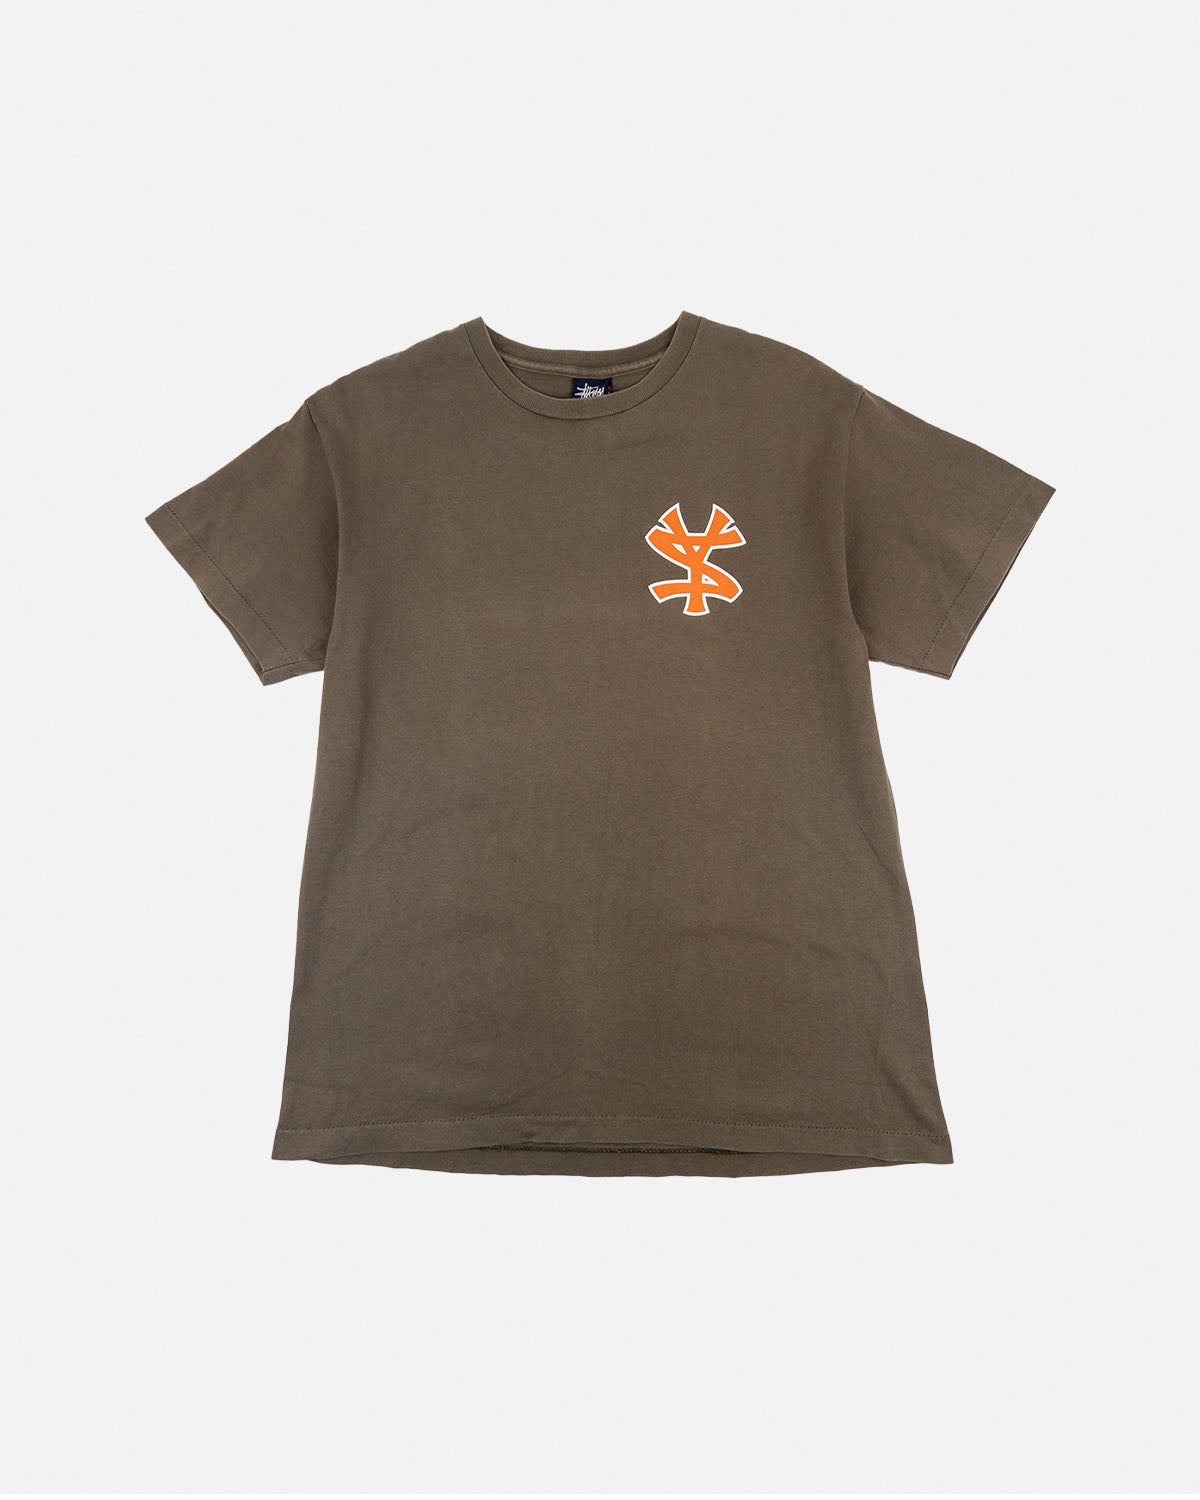 1990s Stüssy Brown/Orange Jersey T-Shirt